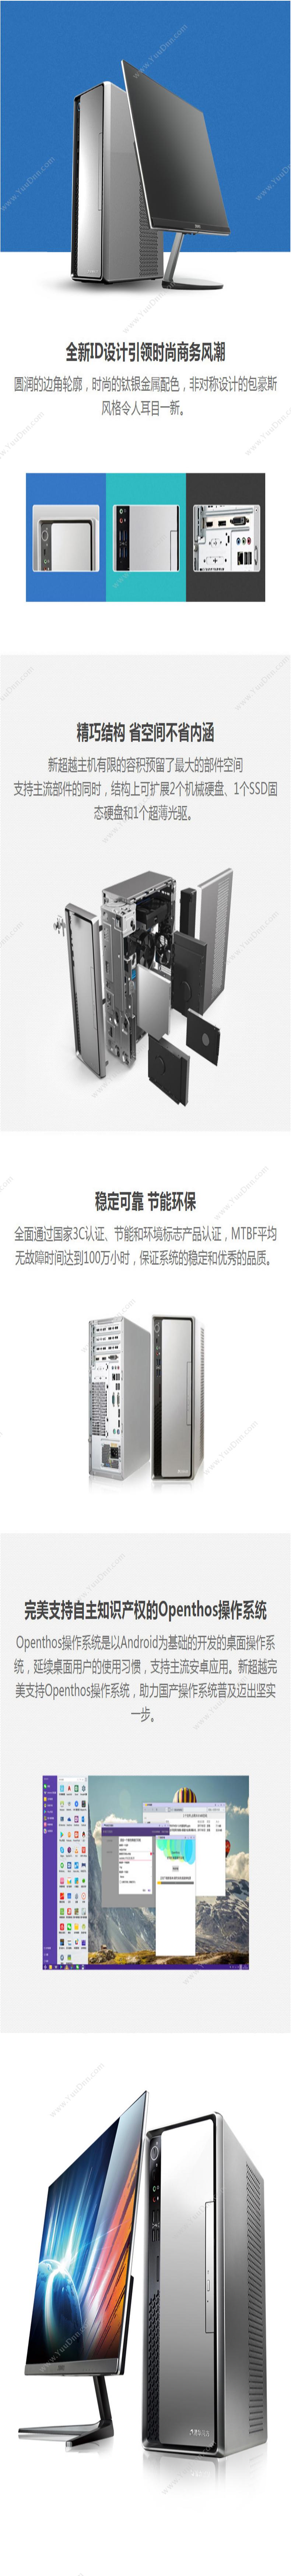 清华同方 TongFang 超扬A5500-5030(19.5寸显示器） 台式机 台式电脑套机